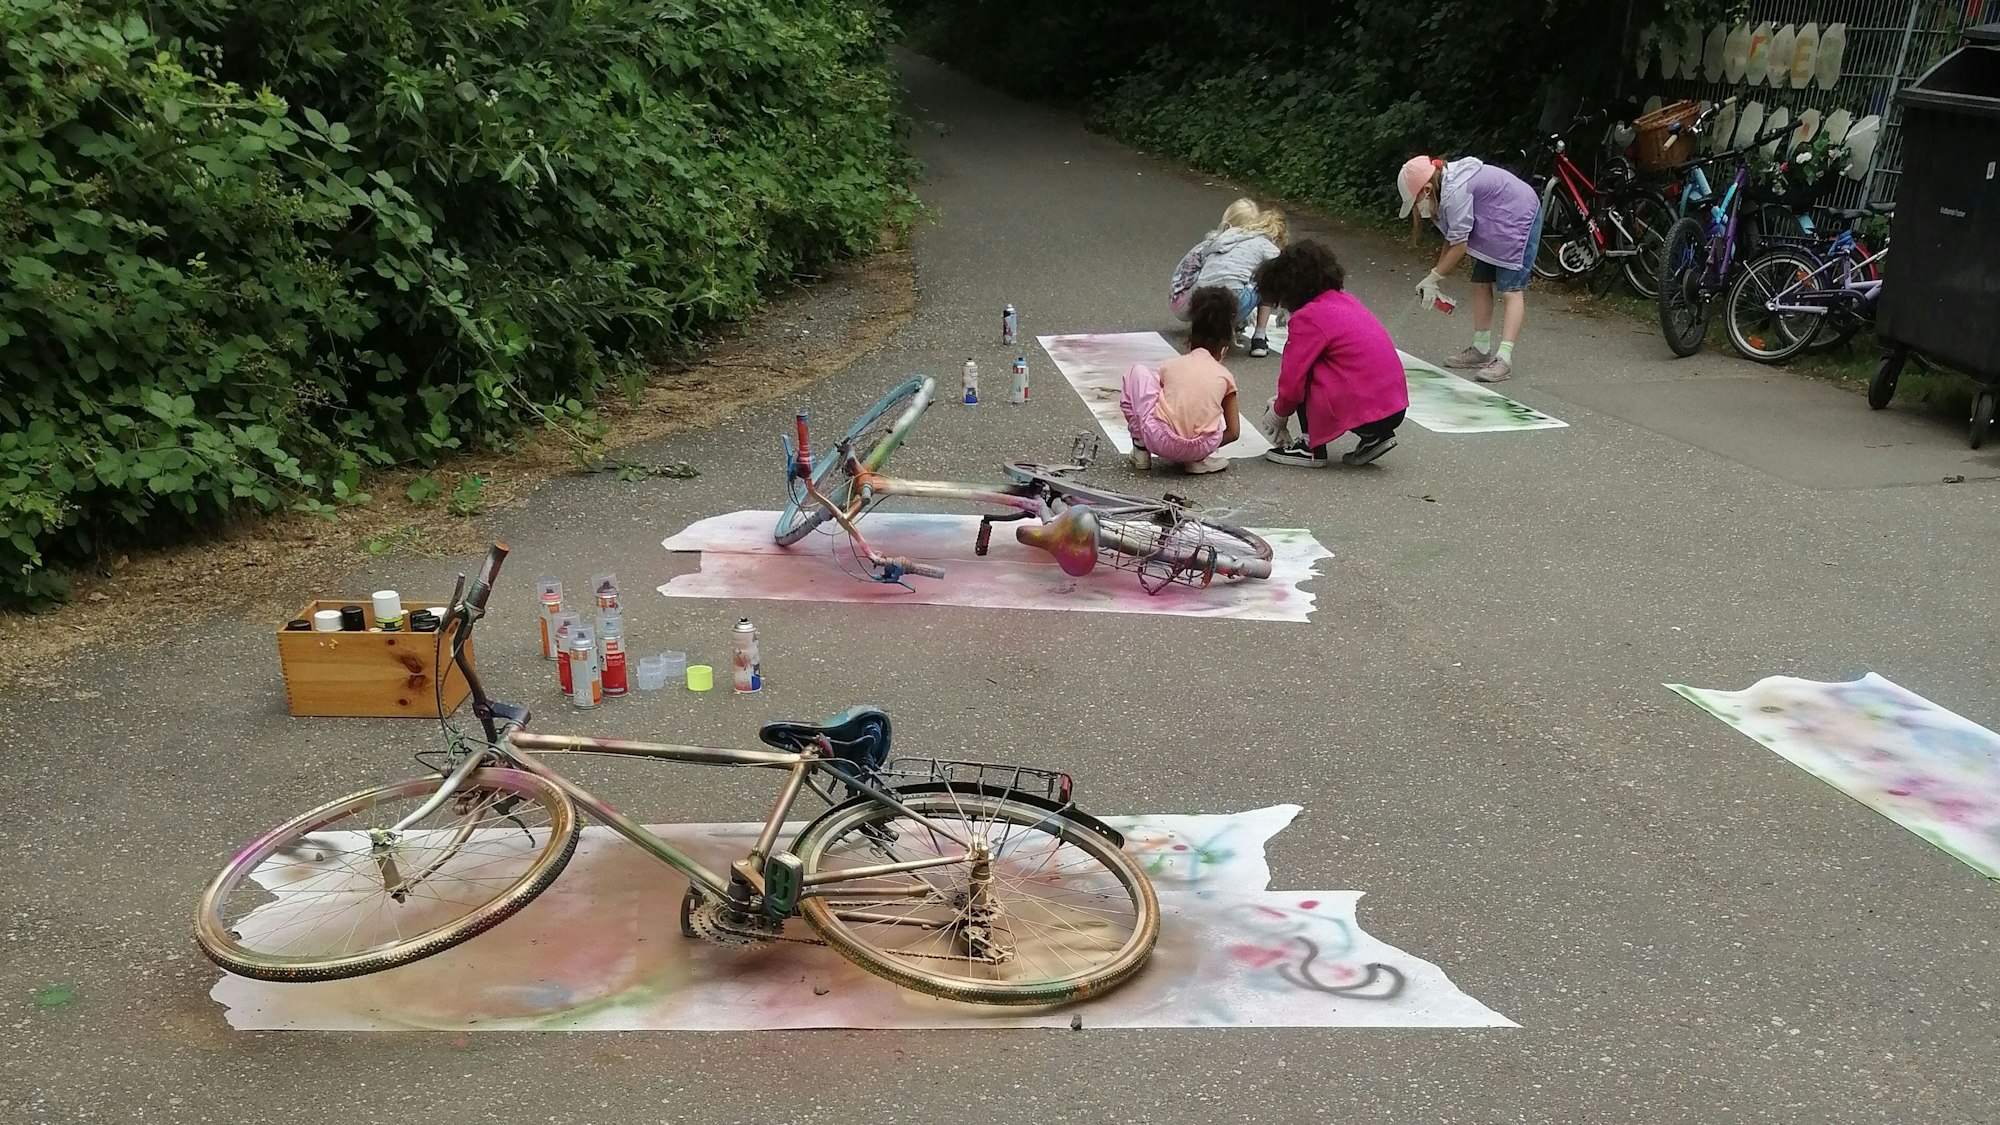 Auf dem Bild sind von Kindern bemalte Fahrräder zu sehen.